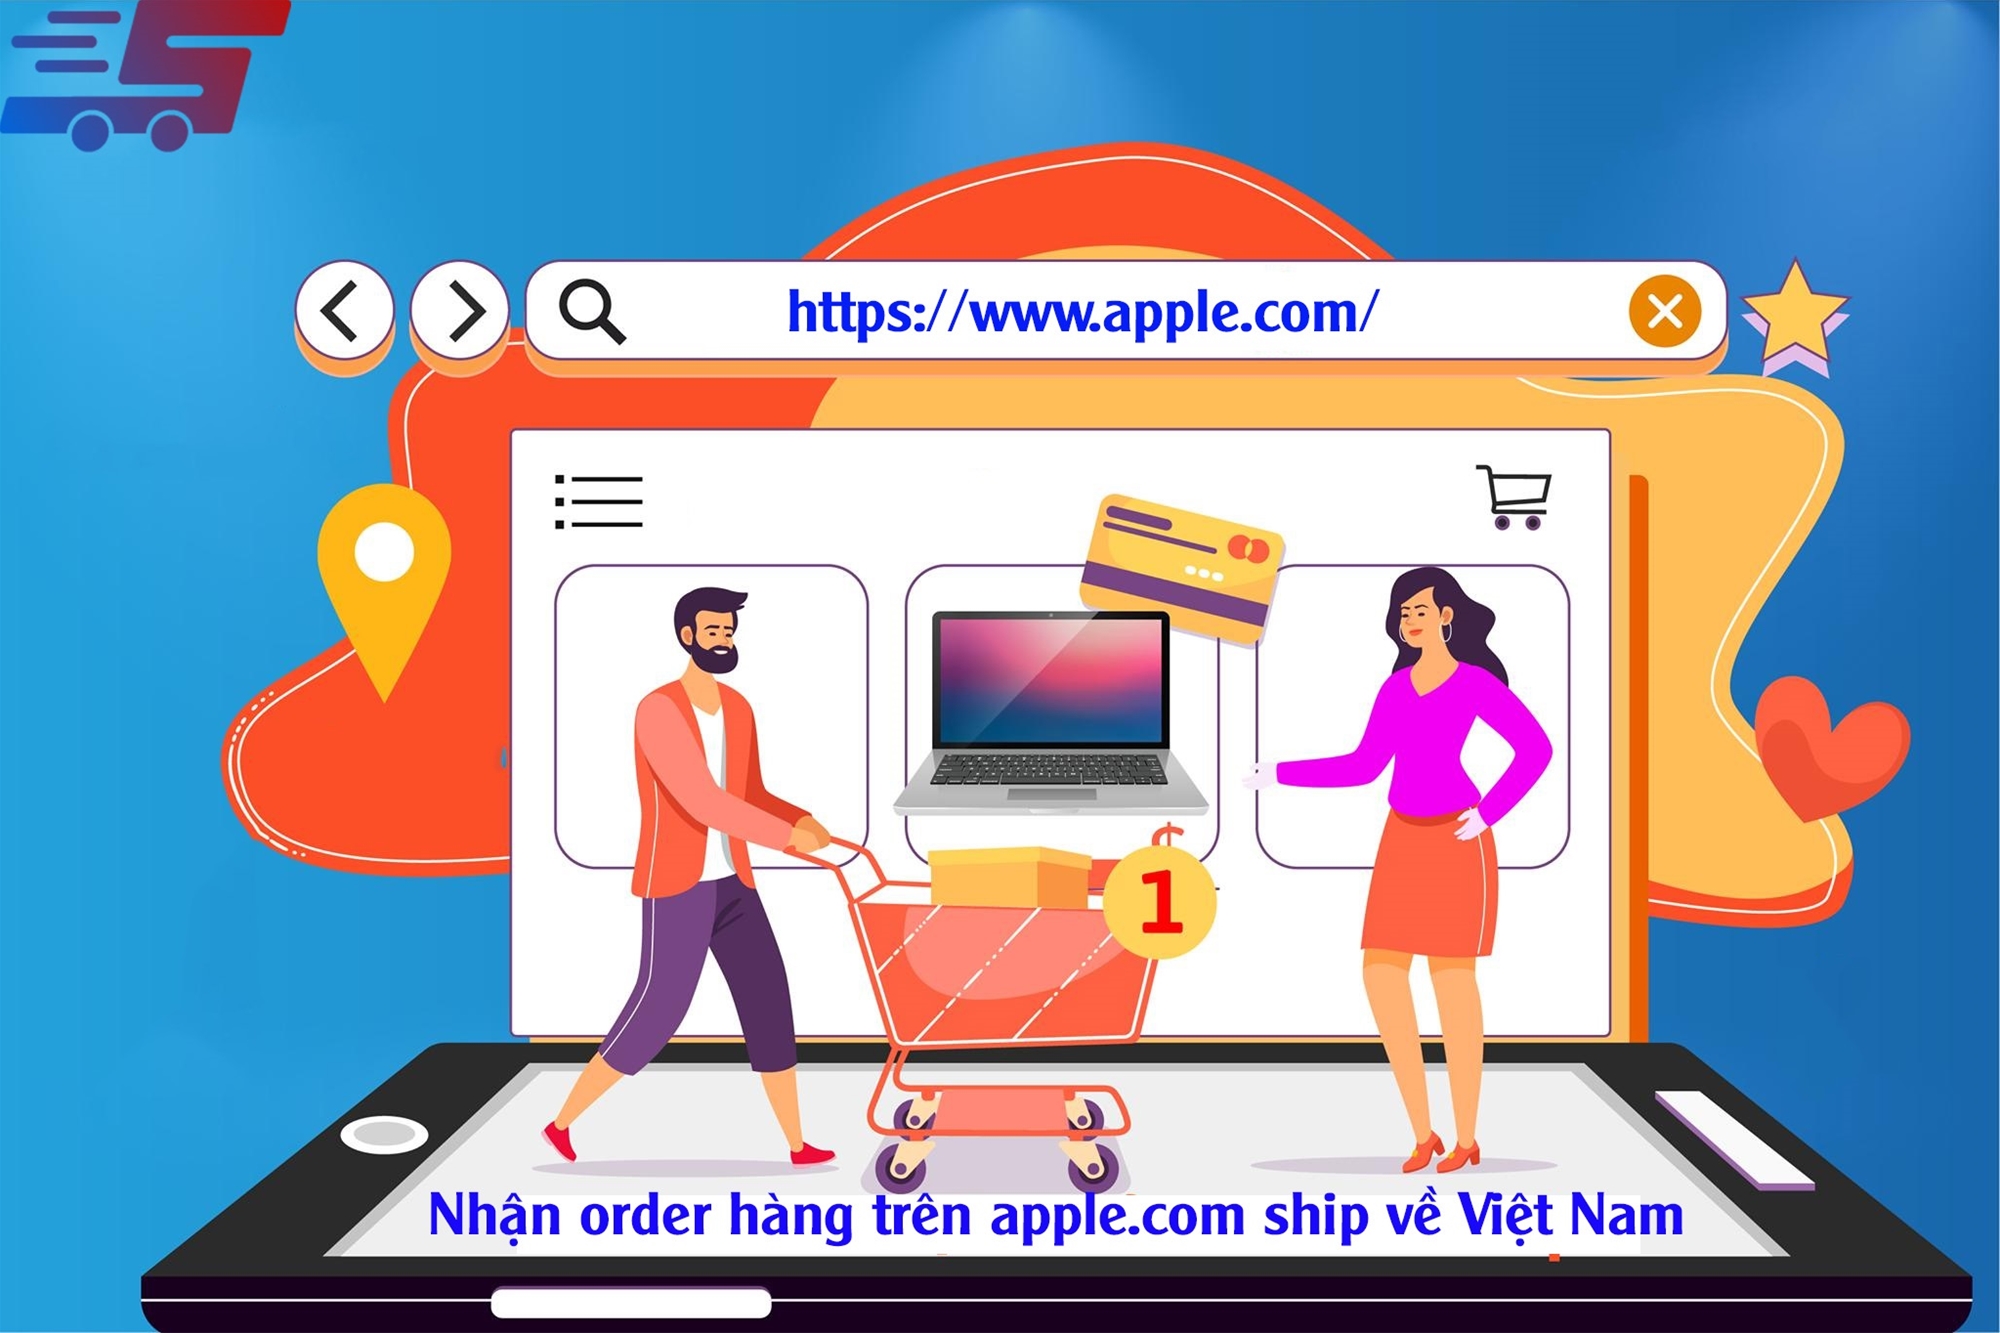 Nhận order hàng trên Apple.com ship về Việt Nam